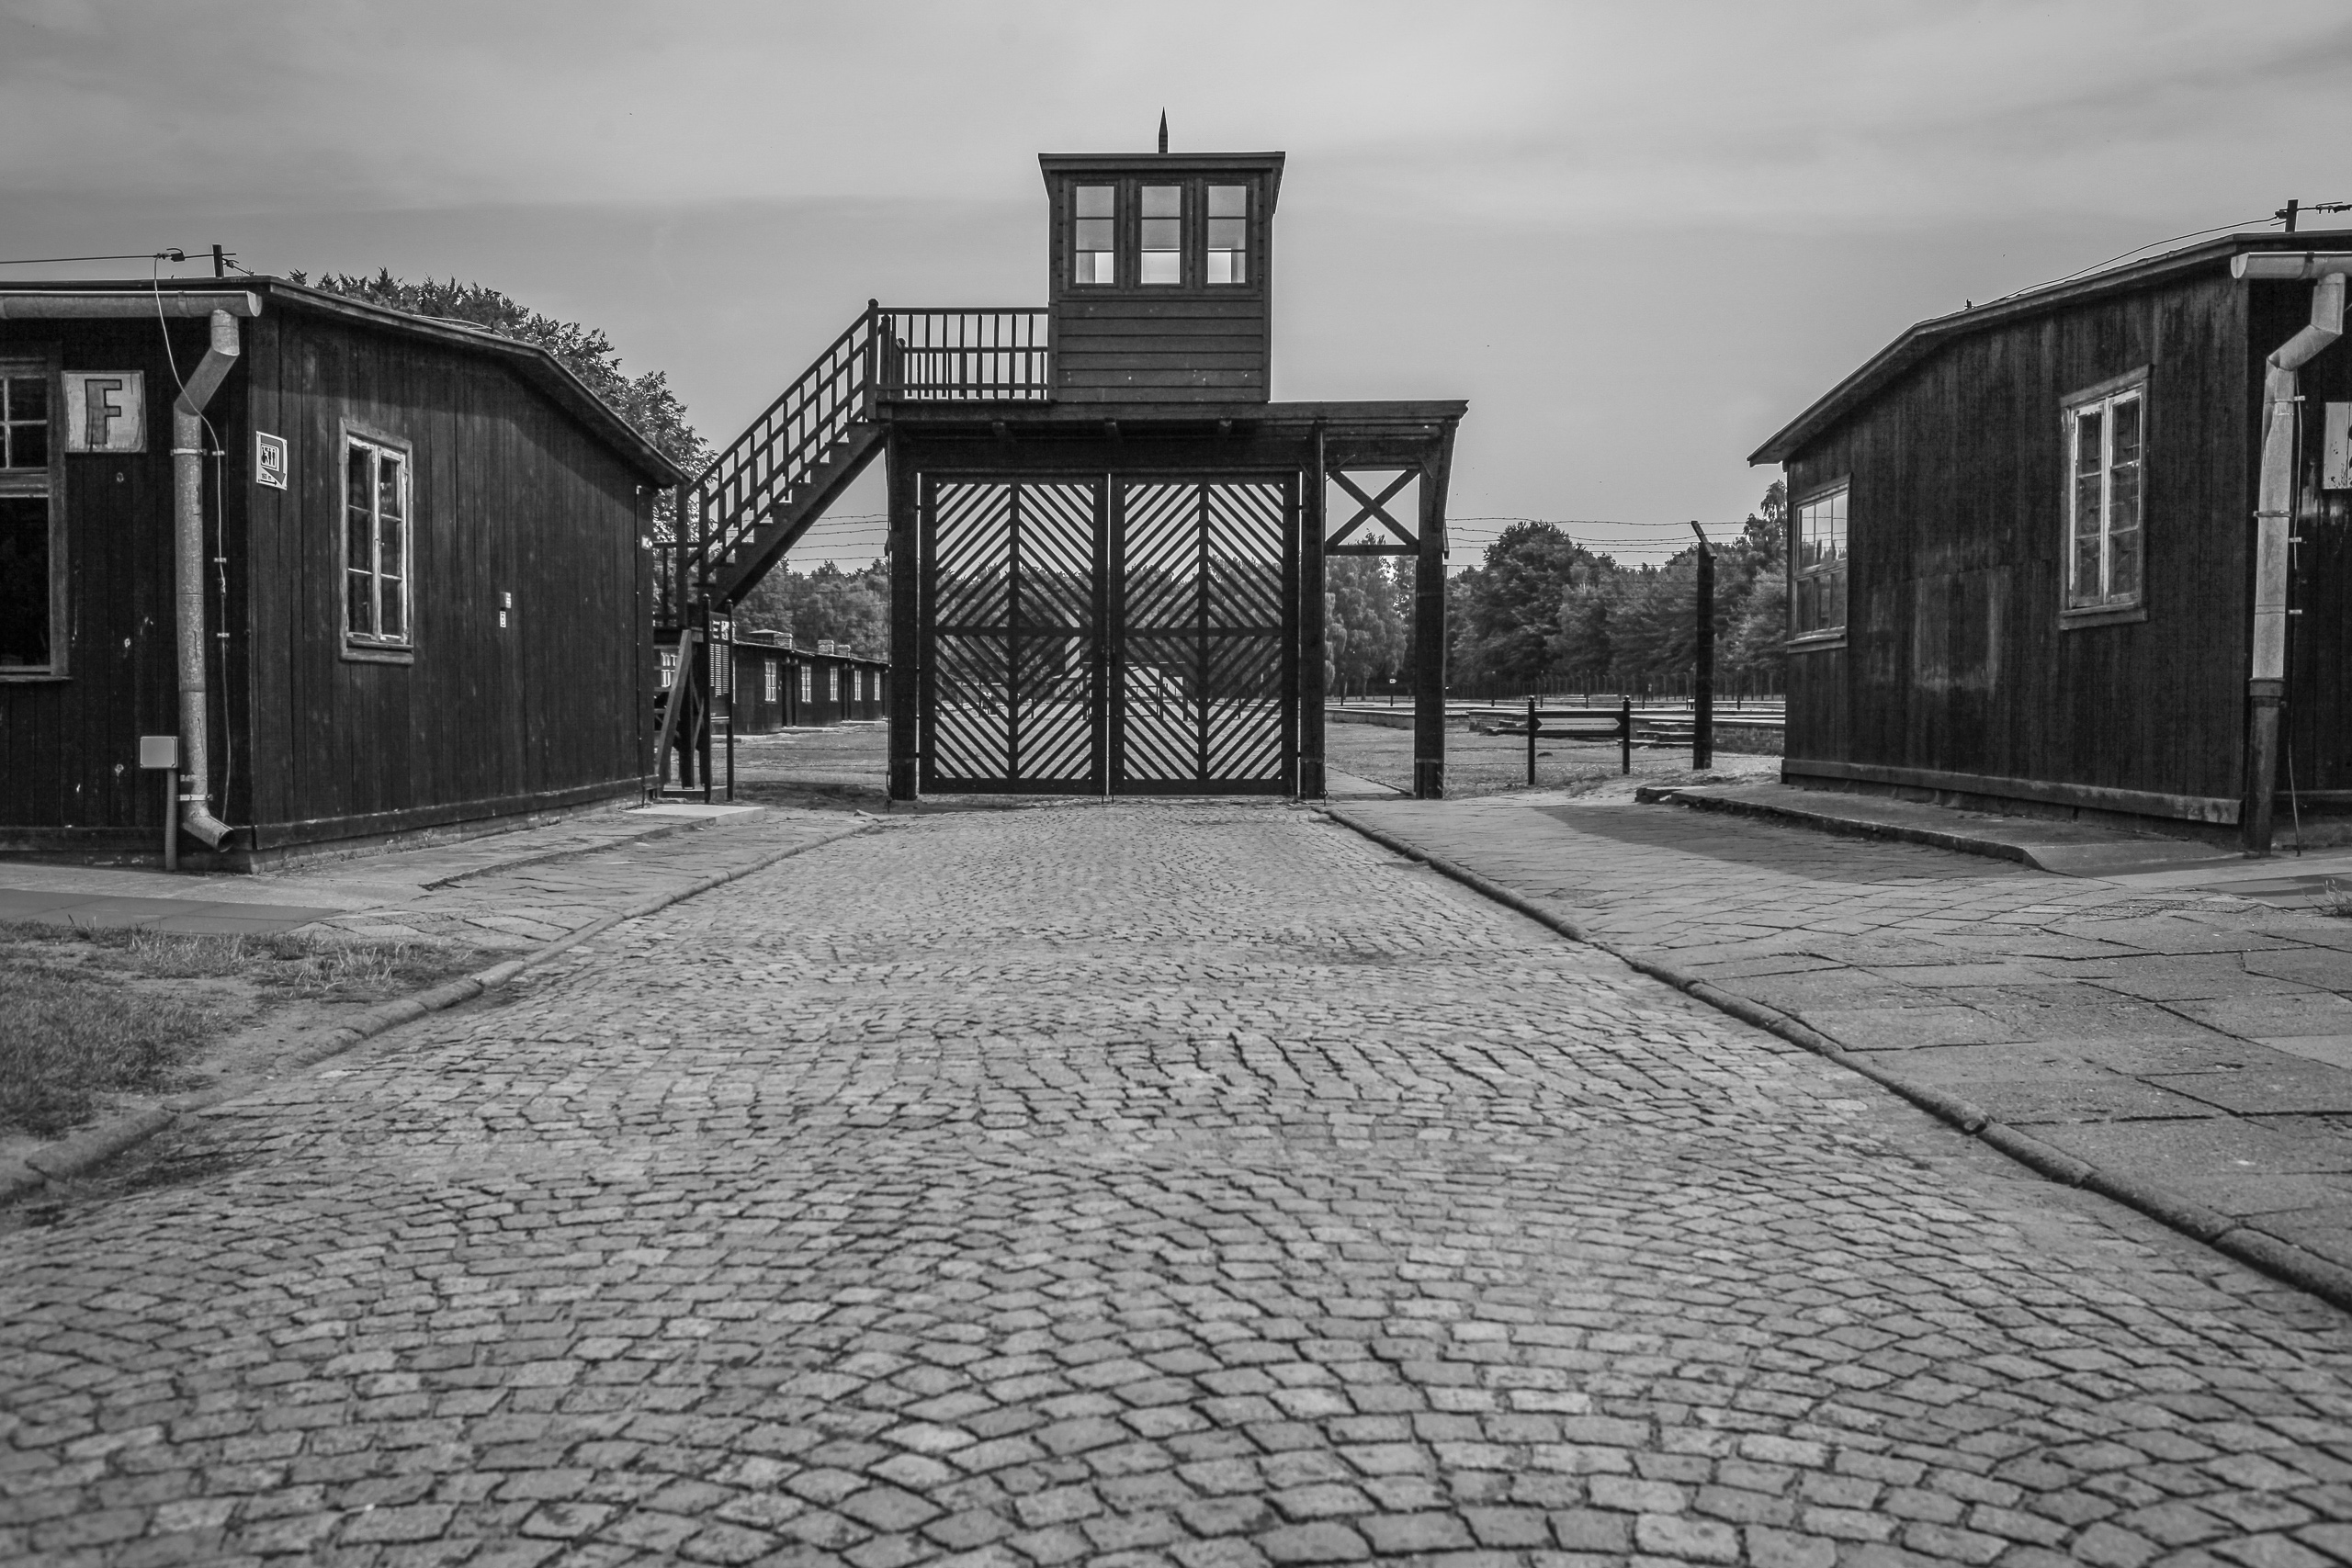 Concentration camp. Штуттгоф концентрационный лагерь. Лагерь Штуттгоф. Концлагерь Штутгоф.